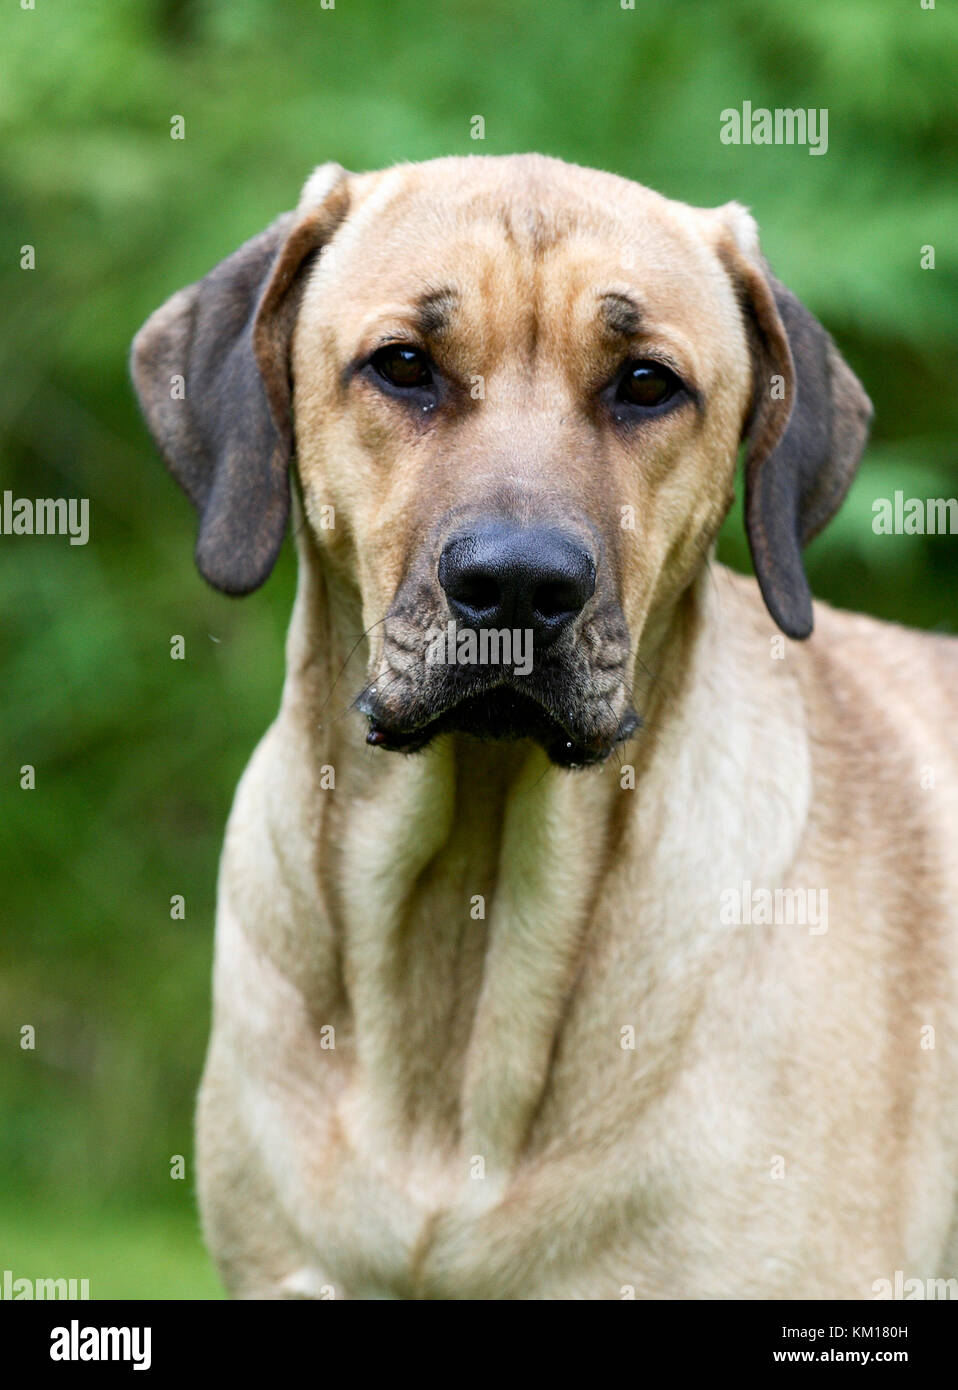 Dogge Stockfotos Und Bilder Kaufen Seite 2 Alamy